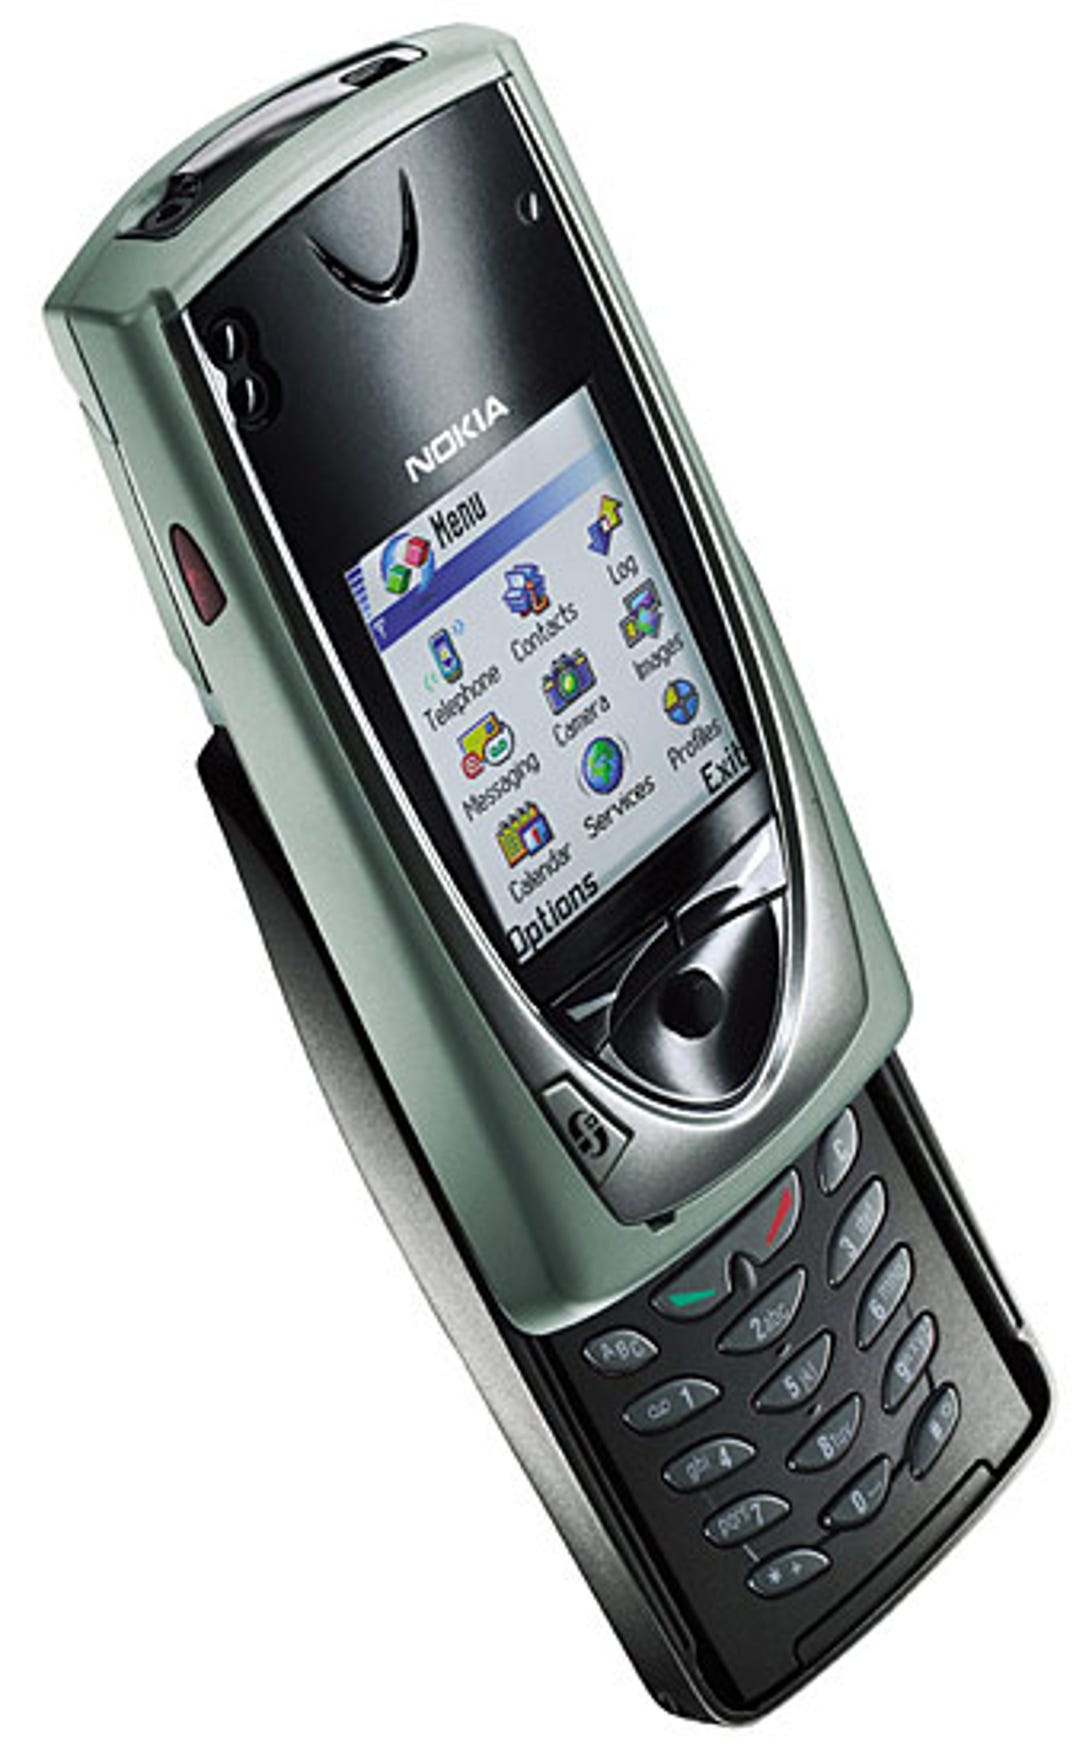 Gambar Nokia 7650